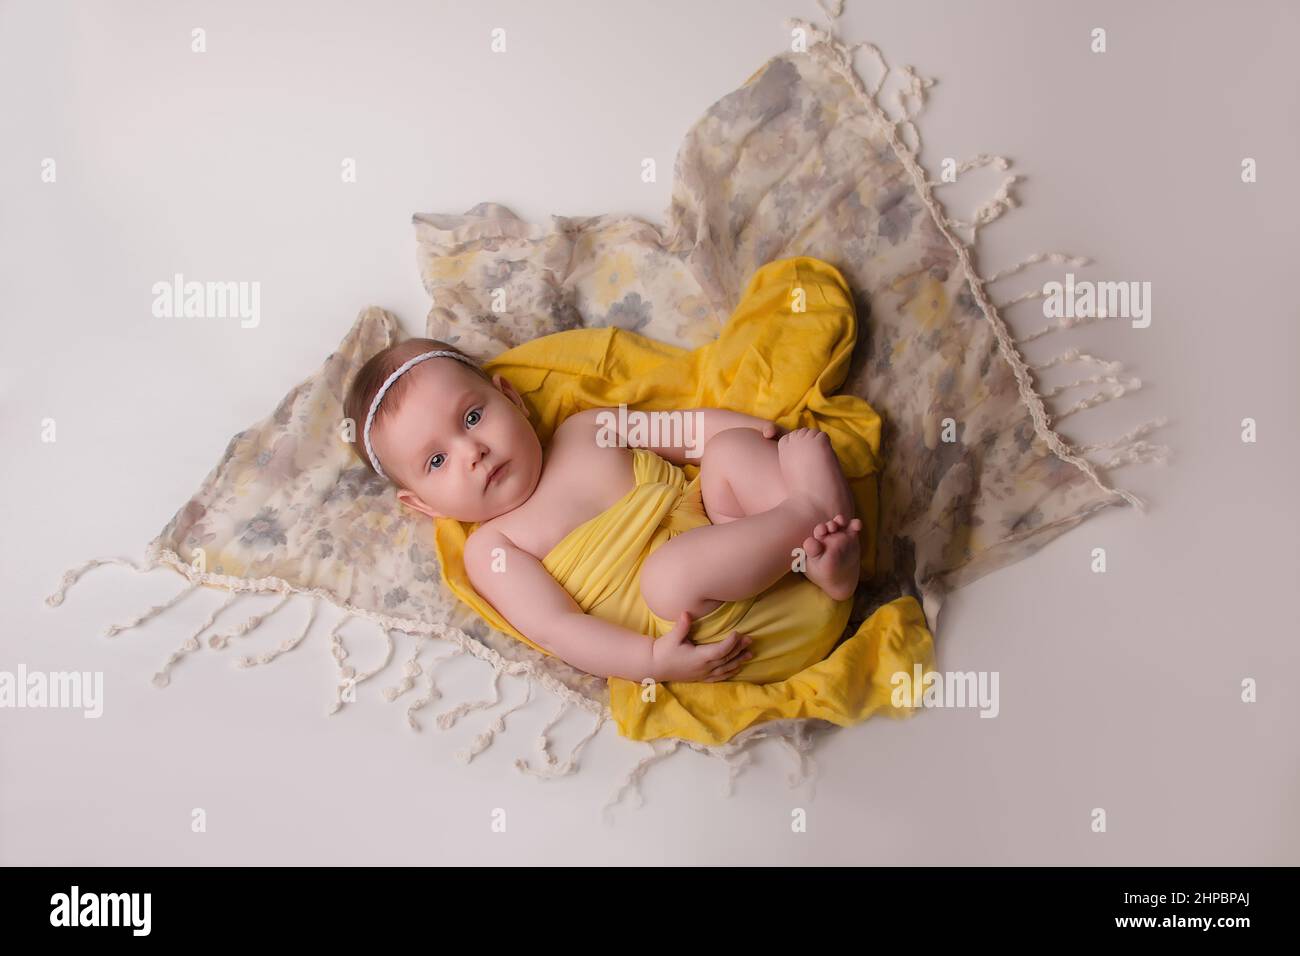 un bebé recién nacido con ropa amarilla, fondo gris, está sobre su espalda.  Feliz infancia, con estilo para recién nacidos y niños Fotografía de stock  - Alamy